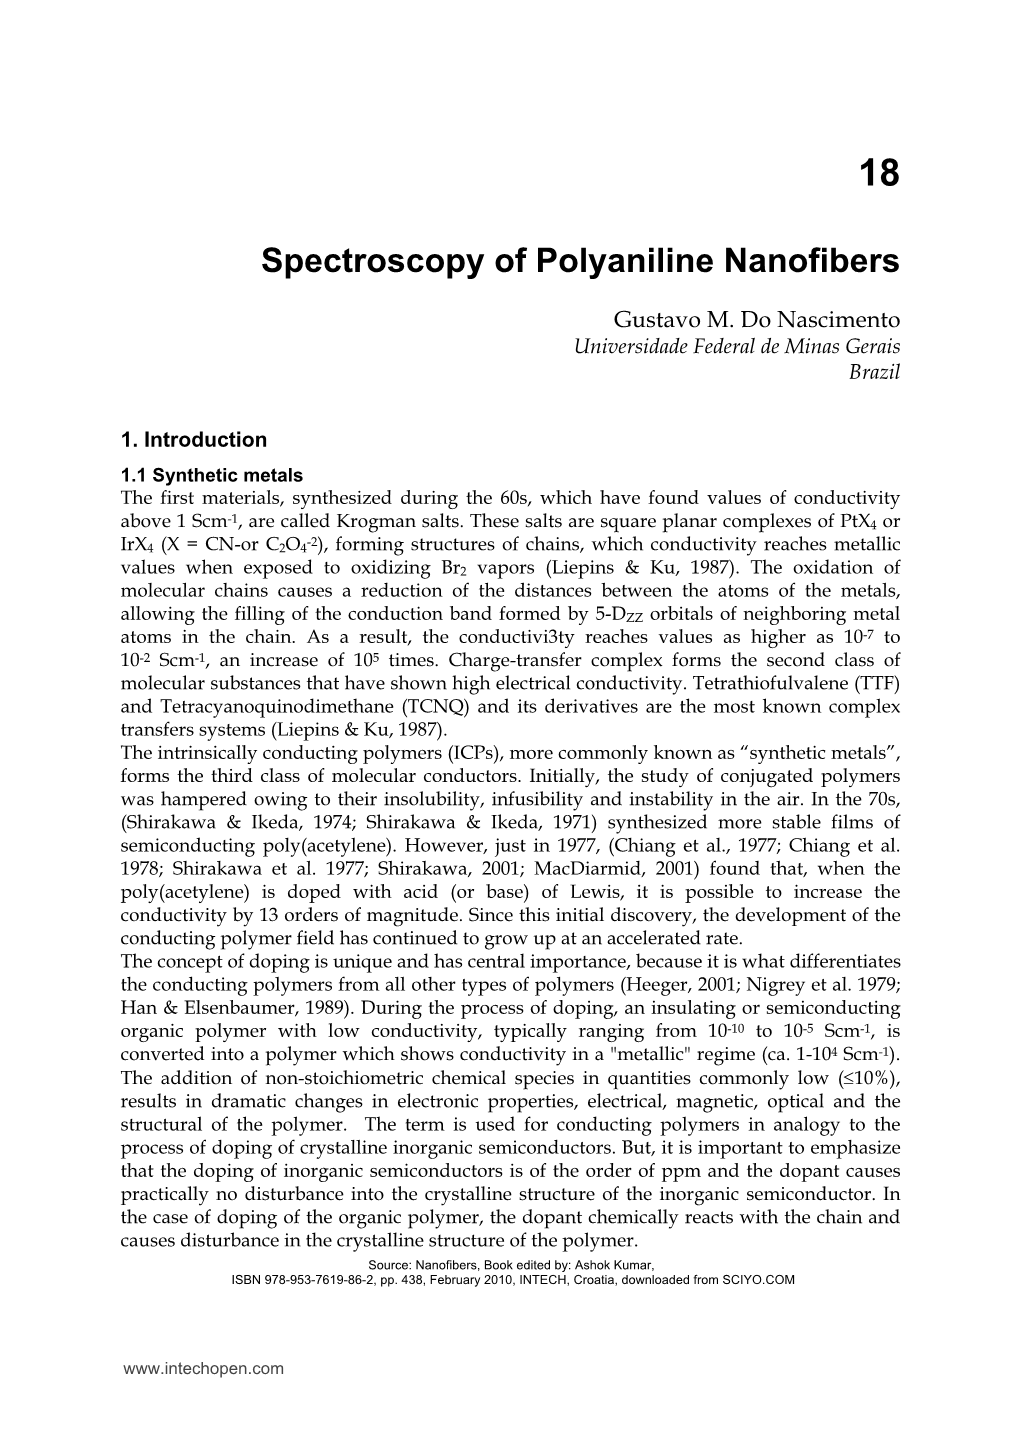 Spectroscopy of Polyaniline Nanofibers